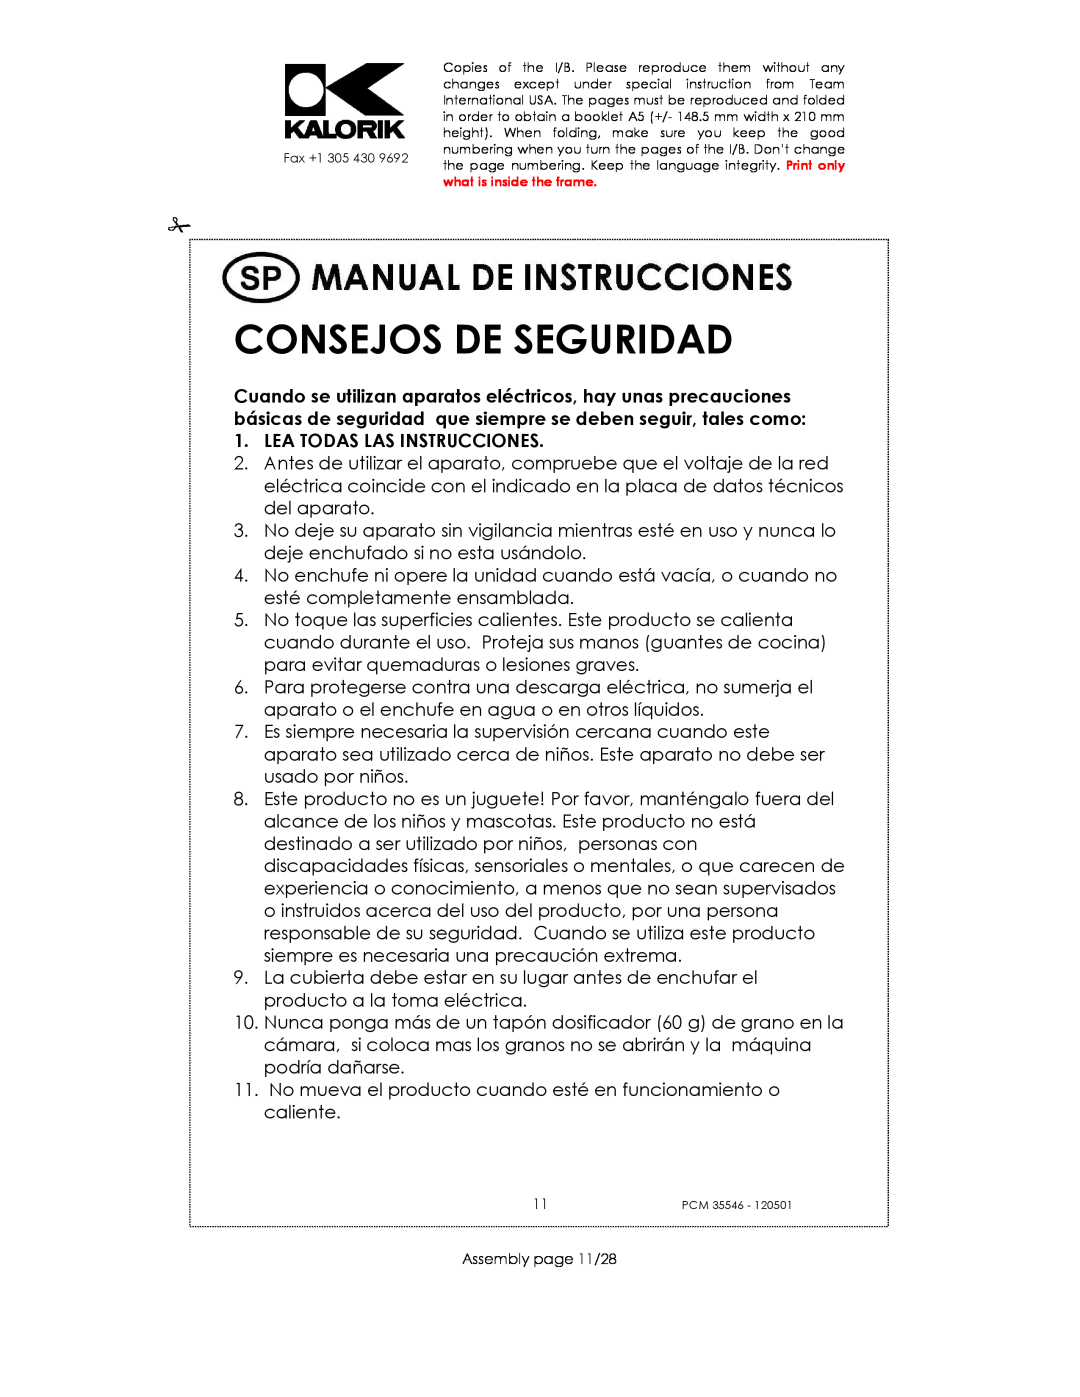 Kalorik PCM 35546 manual Consejos De Seguridad, Lea Todas Las Instrucciones 